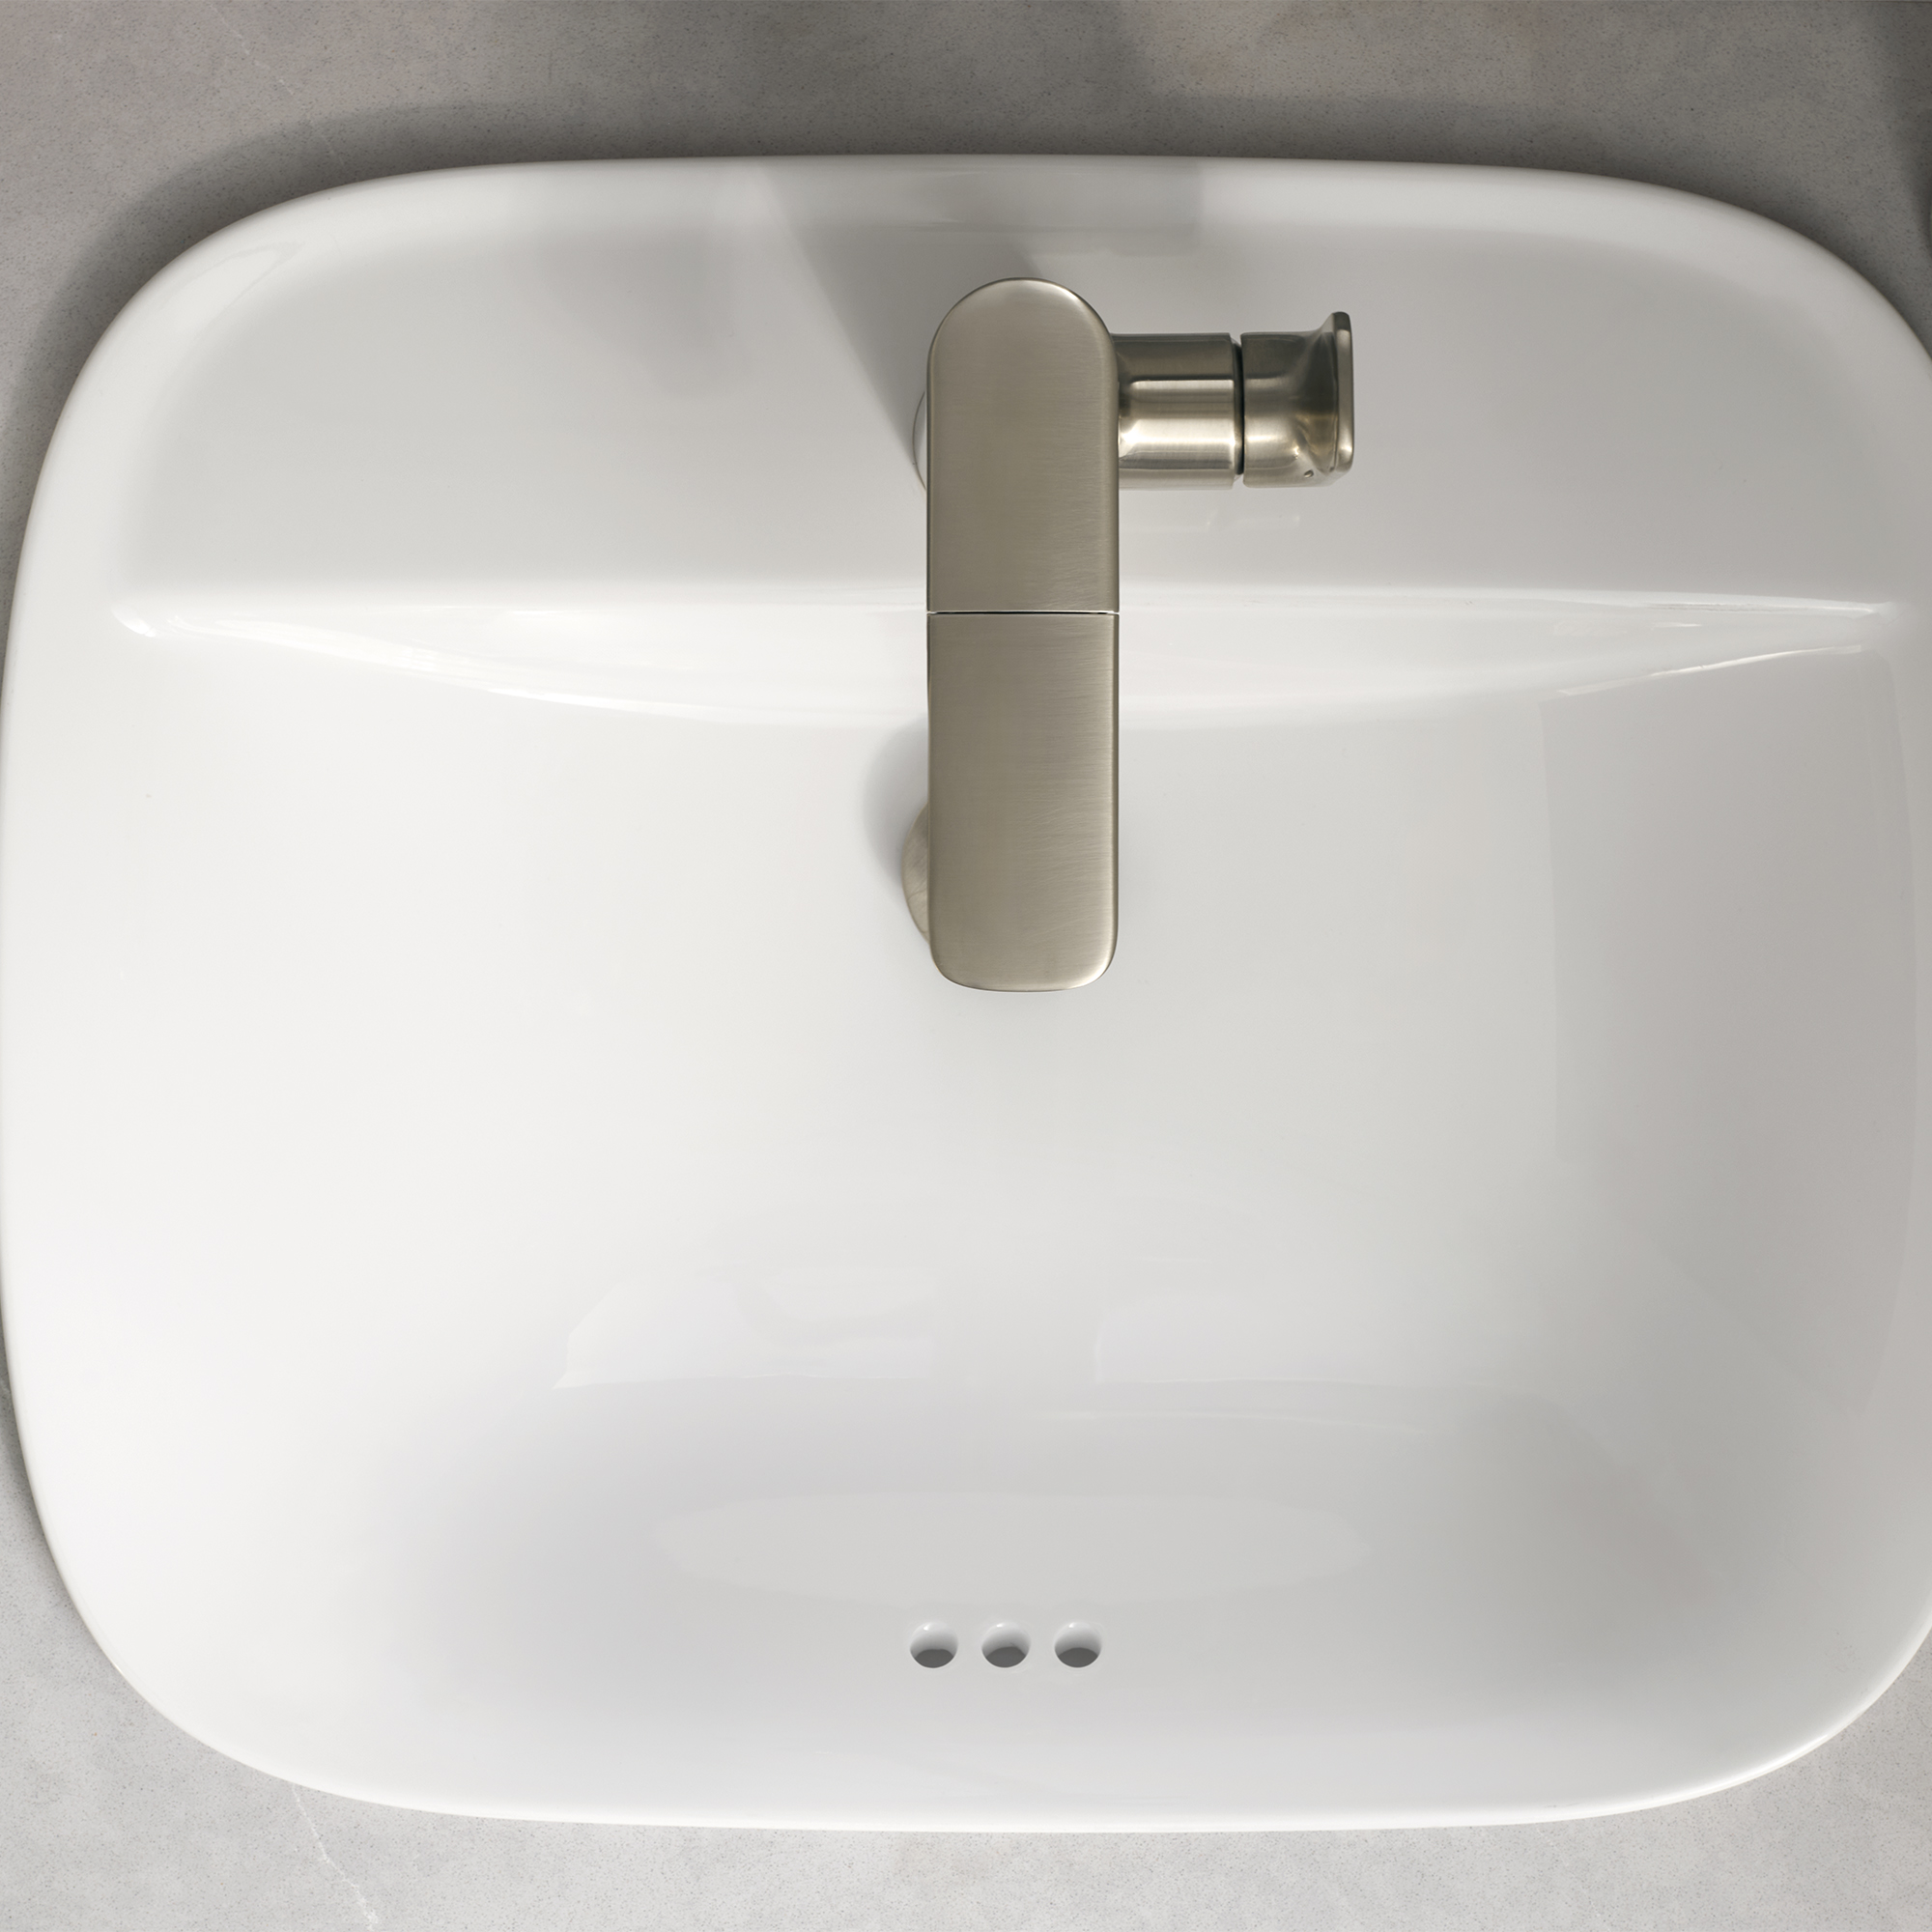 AspirationsMC - robinet de salle de bain rétractable à poignée simple à levier, 1,2 gpm/ 4,5 L/min